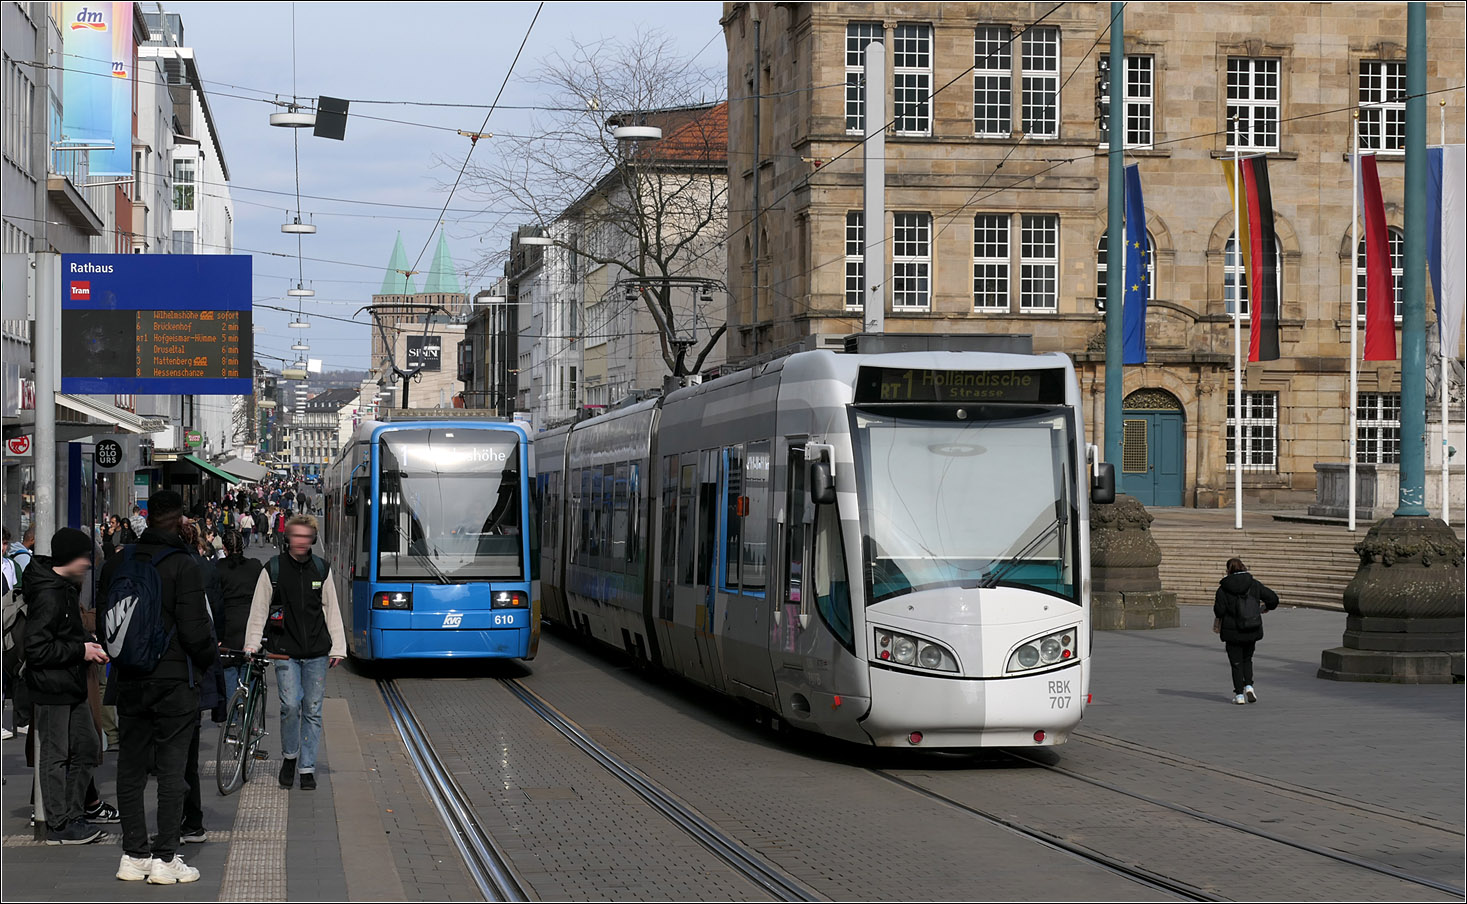 Straßenbahn und RegioTram -

... begegnen sich an der Haltestelle Rathaus am oberen Ende der Kassler Fußgängerzone. Auf der Straßenbahnlinie 1 fährt Bombardier 8NGTW 610, als RT1 unterwegs ist Alstom RegioCitadis 707. Dieser gehört zu den E/E-Wagen der RegioTram, die sowohl im Wechselstromnetz der DB, als auch im Gleichstromnetz der Straßenbahn fahren können. Im Gegensatz dazu gibt es auch E/D Wagen für den Einsatz neben den Straßenbahnstrecken auch auf nicht elektrifizierten Strecken. Diese haben zusätzlich zwei Dieselmotoren.

20.03.2024 (M)